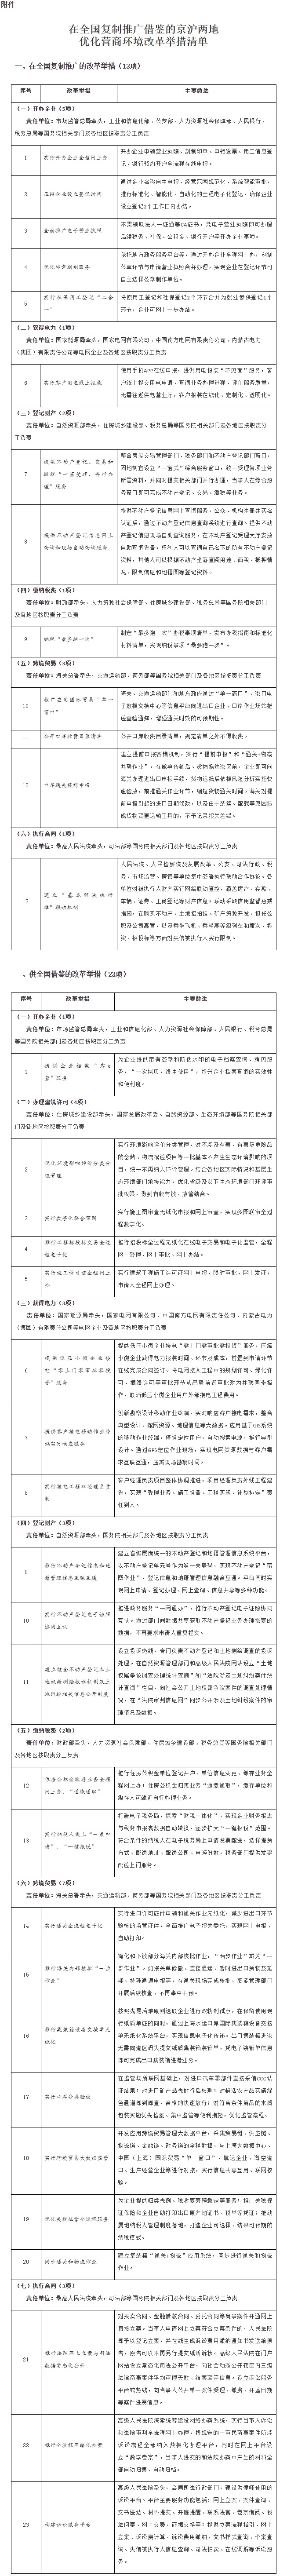 附件：在全國複製推廣借鑒的京滬兩地優化營商環境改革舉措清單.jpg